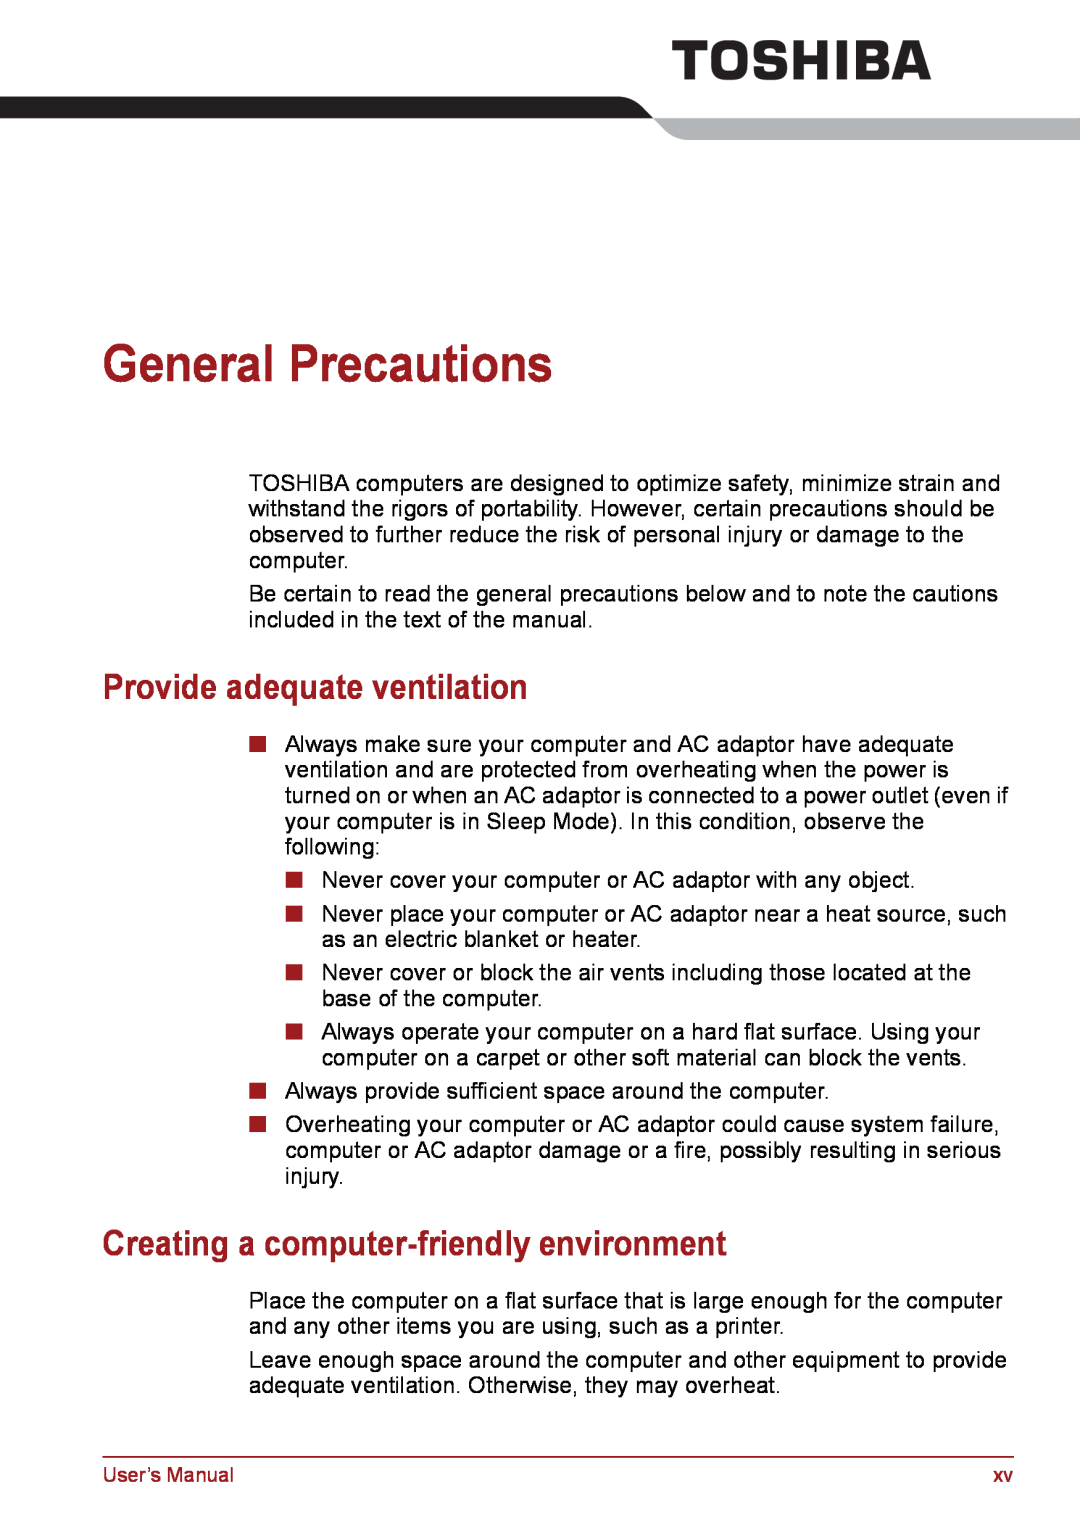 Toshiba PSC08U-02D01D General Precautions, Provide adequate ventilation, Creating a computer-friendly environment 